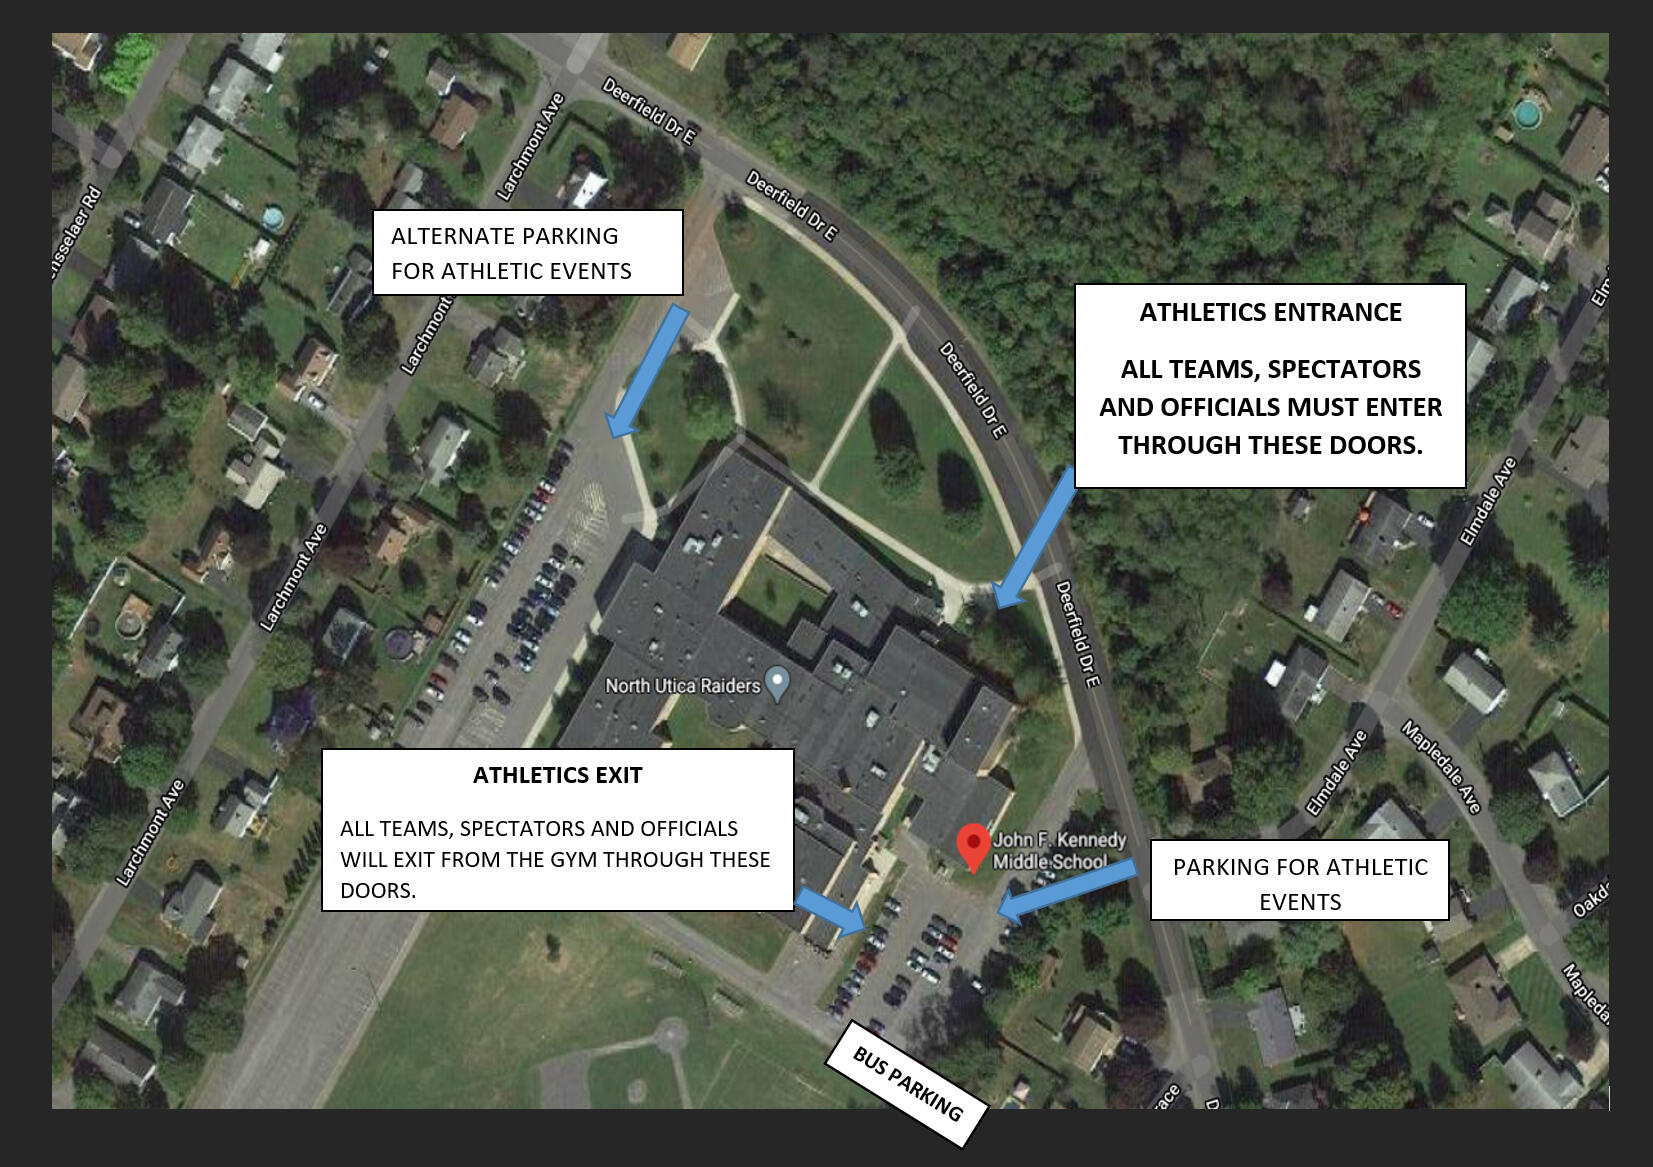 JFK အလယ်တန်းကျောင်းမှာ ကားရပ်ခြင်းရဲ့ မြင်ကွင်းမြေပုံ